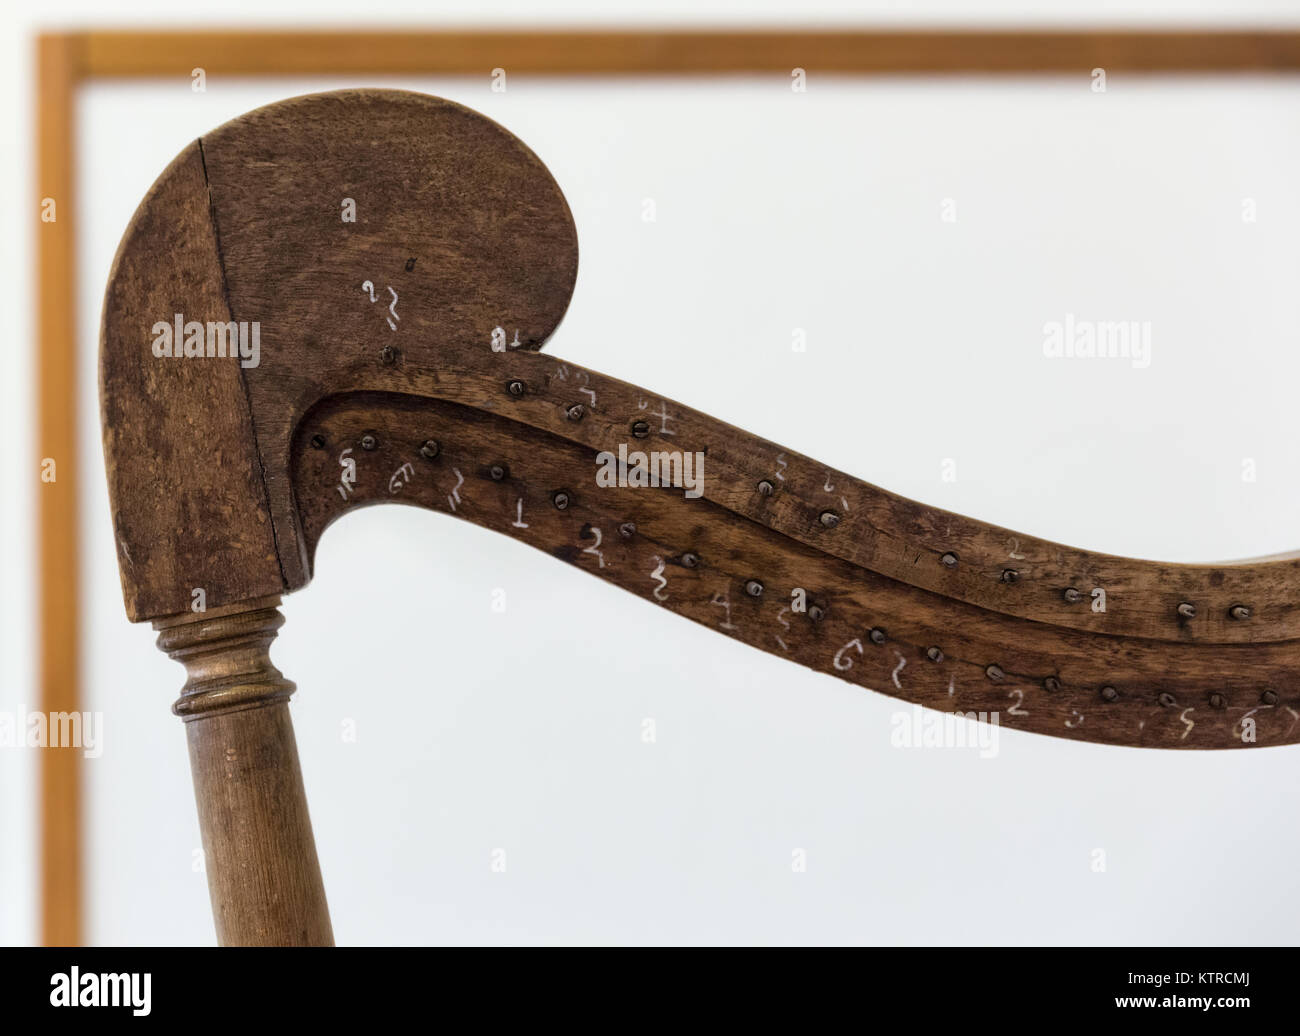 Détail supérieur d'une ancienne harpe avec échelle numérique. Banque D'Images